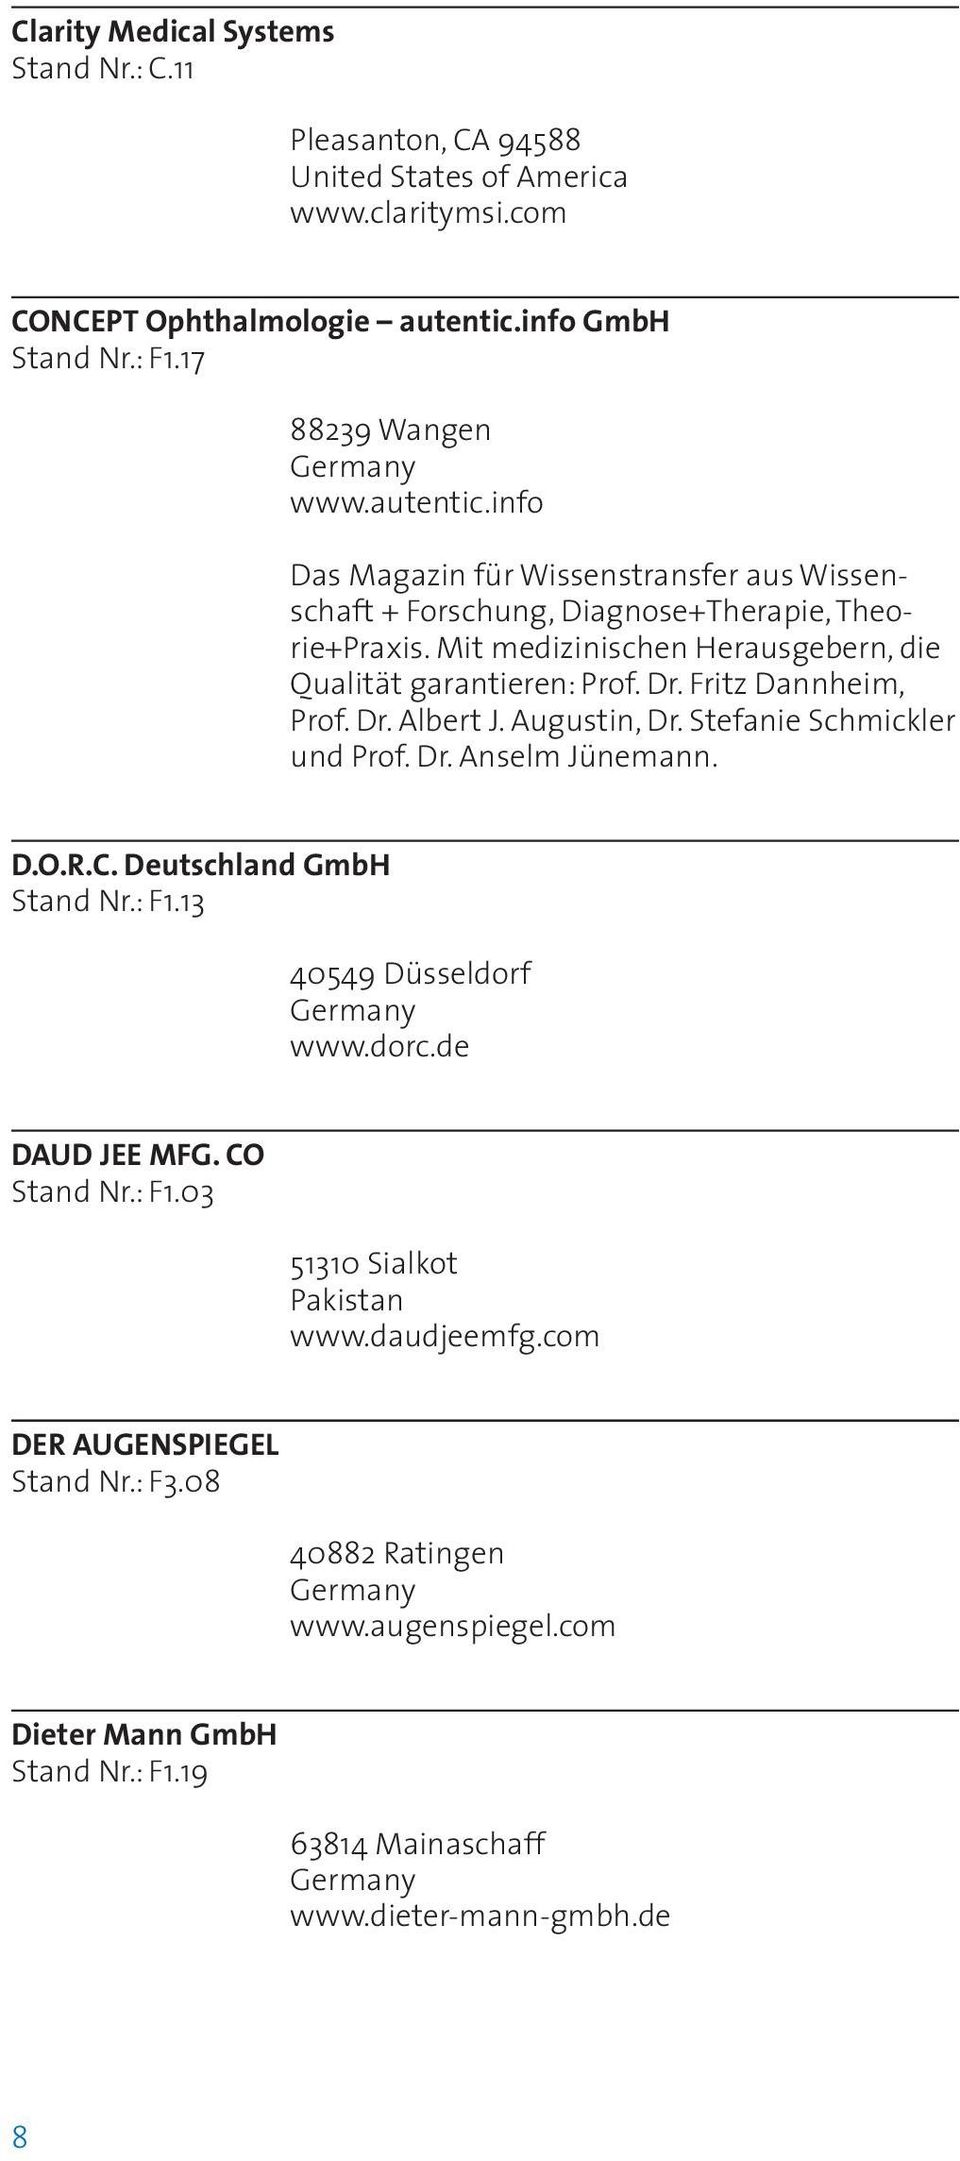 Fritz Dannheim, Prof. Dr. Albert J. Augustin, Dr. Stefanie Schmickler und Prof. Dr. Anselm Jünemann. D.O.R.C. Deutschland GmbH Stand Nr.: F1.13 40549 Düsseldorf www.dorc.de DAUD JEE MFG.